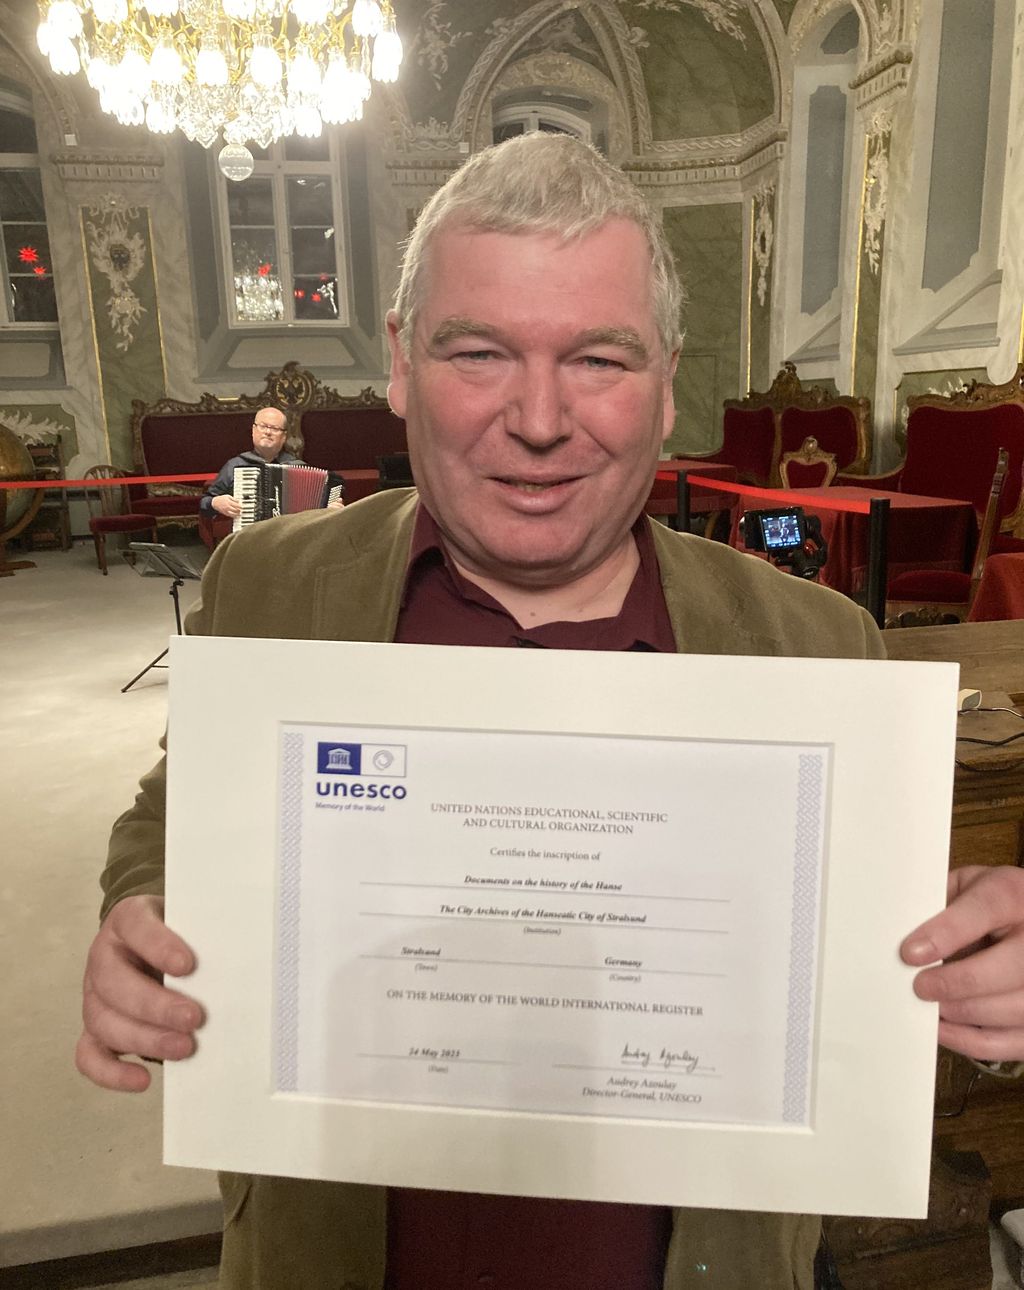 Große Freude bei dem Direktor des Stadtarchivs Stralsund, er hält die offizielle UNESCO-Urkunde in seinen Händen